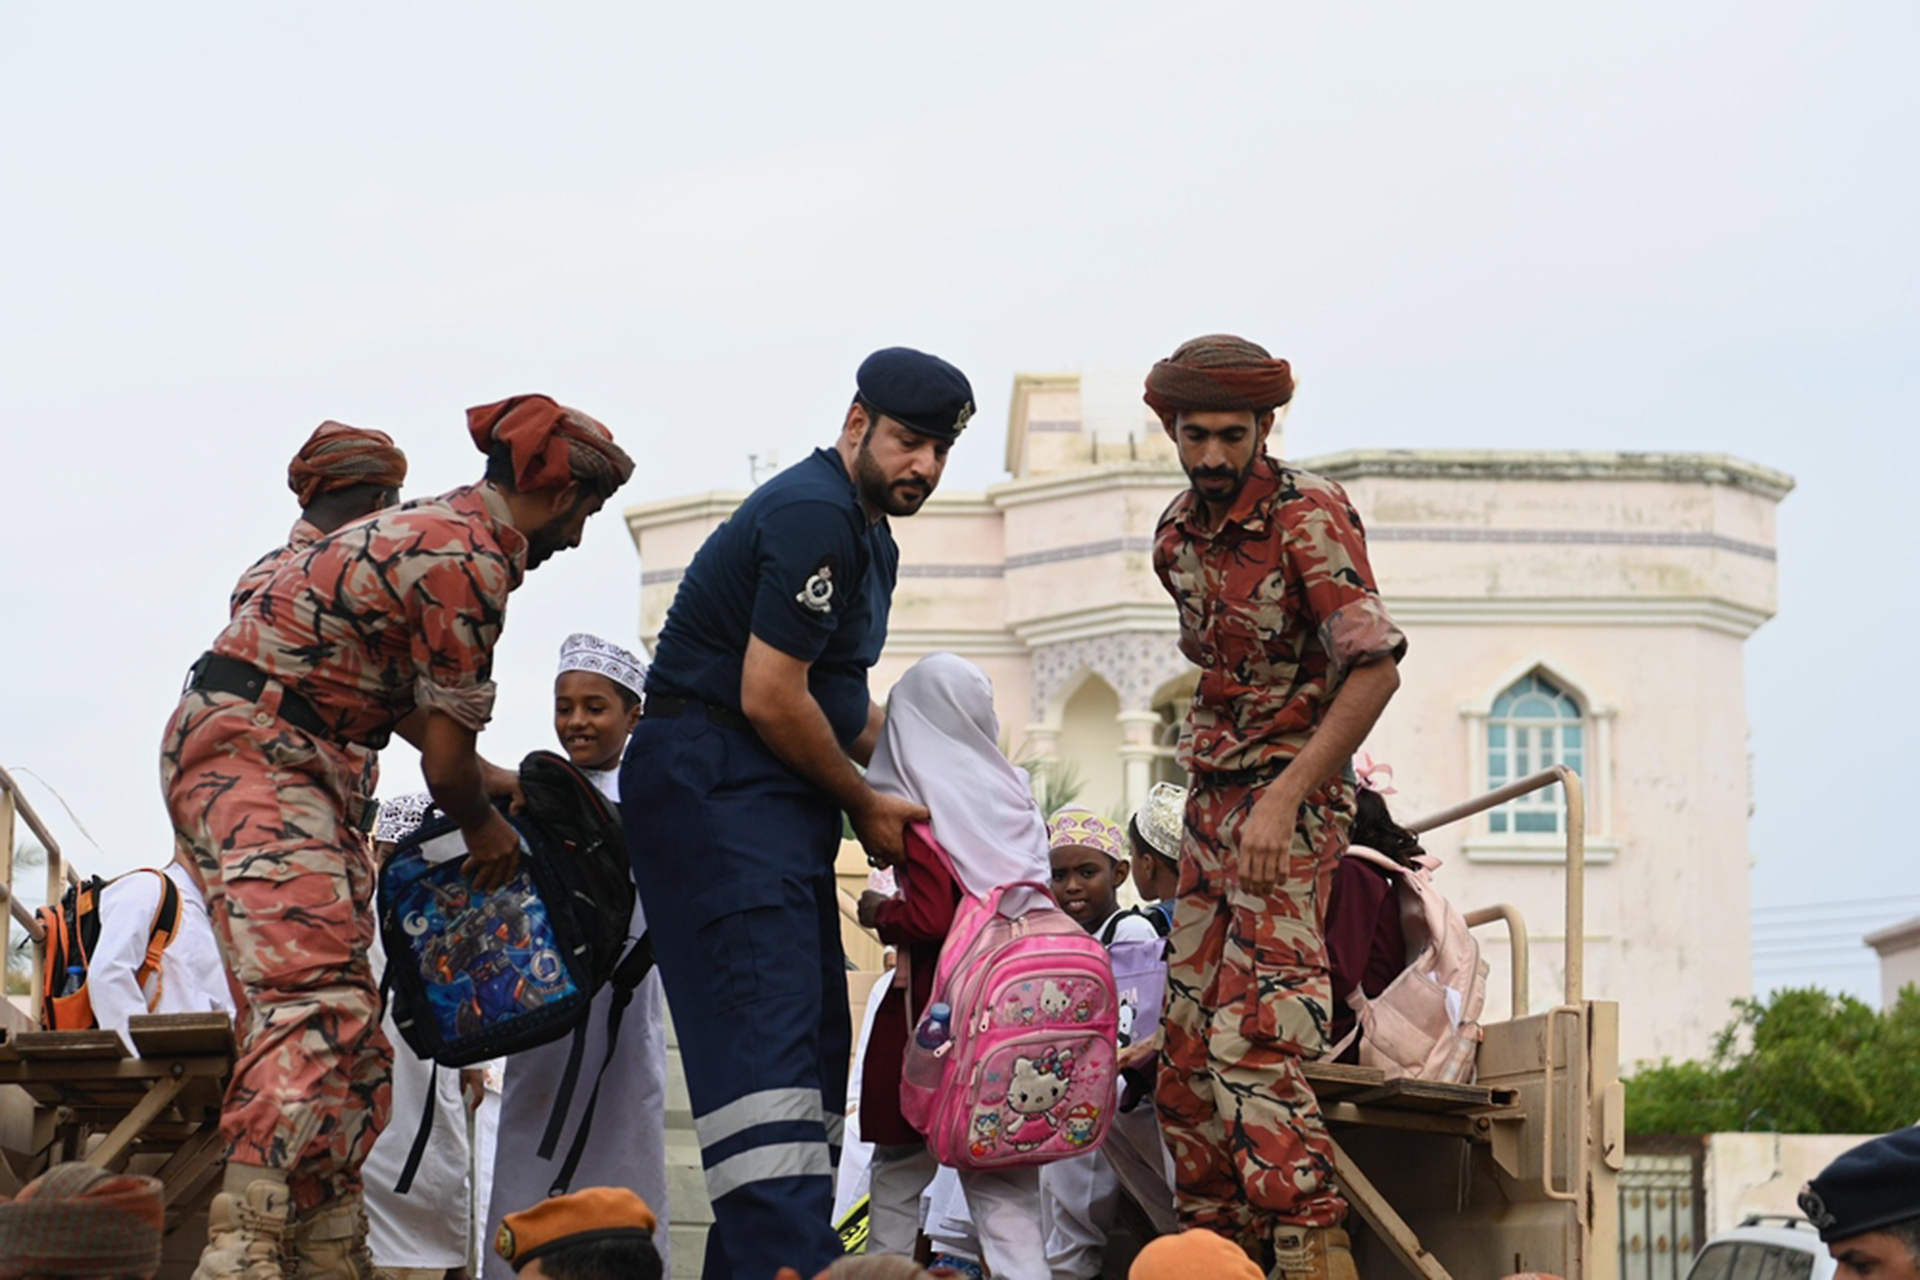 وفاة 13 شخصا بسبب السيول في عُمان | أخبار – البوكس نيوز